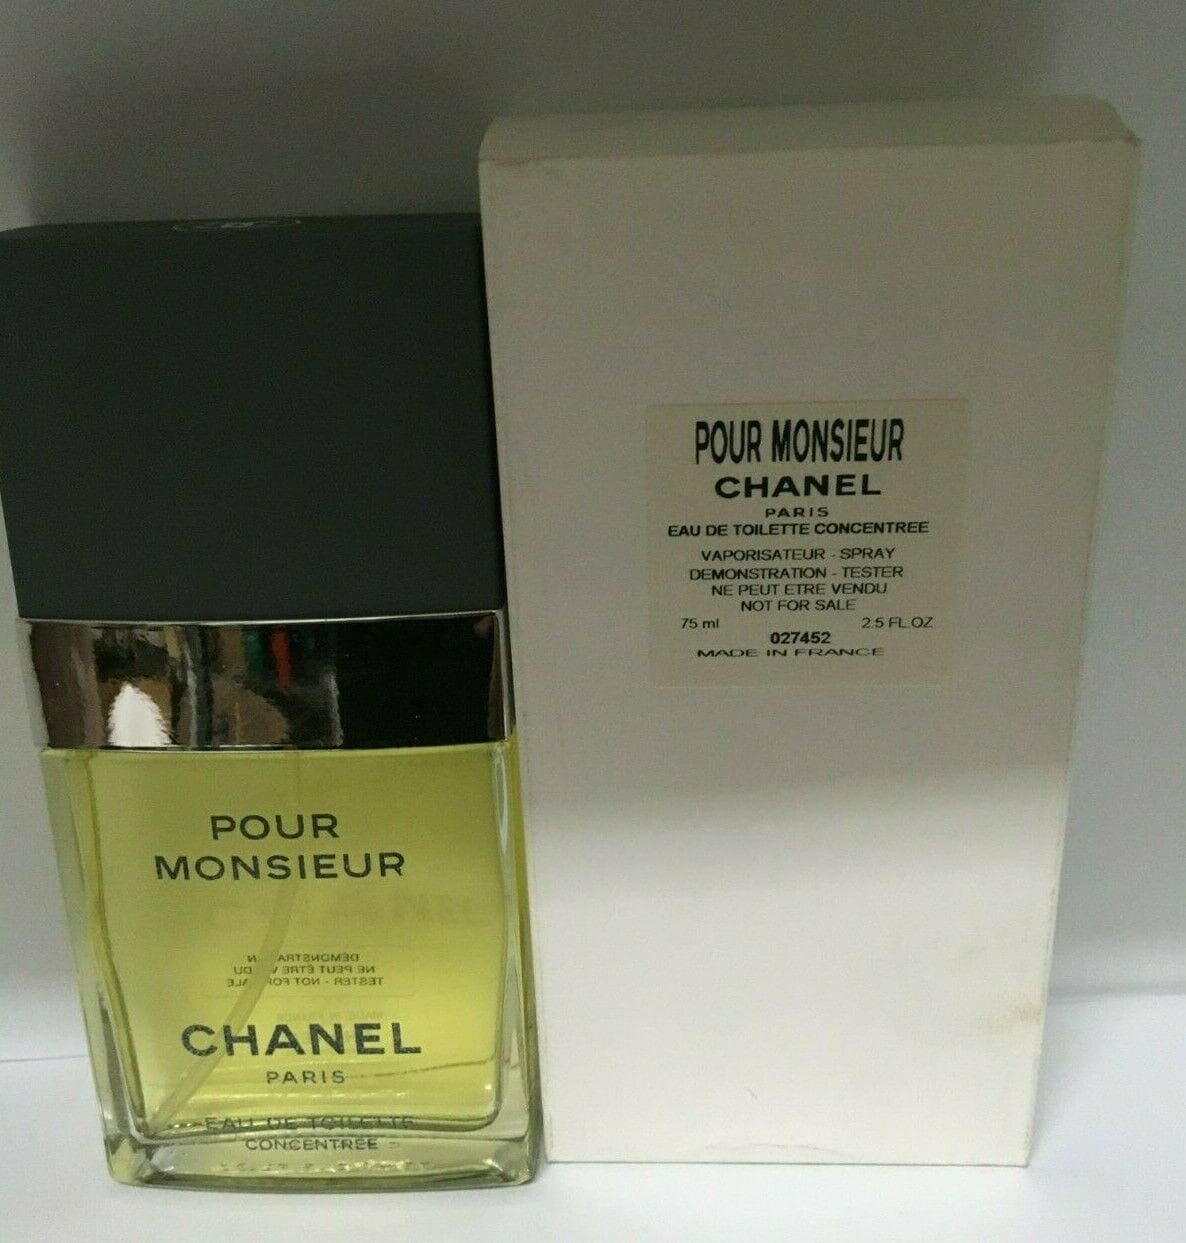 Chanel Pour Monsieur Eau De Toilette Concentree 2.5 Oz Spray -  Sweden